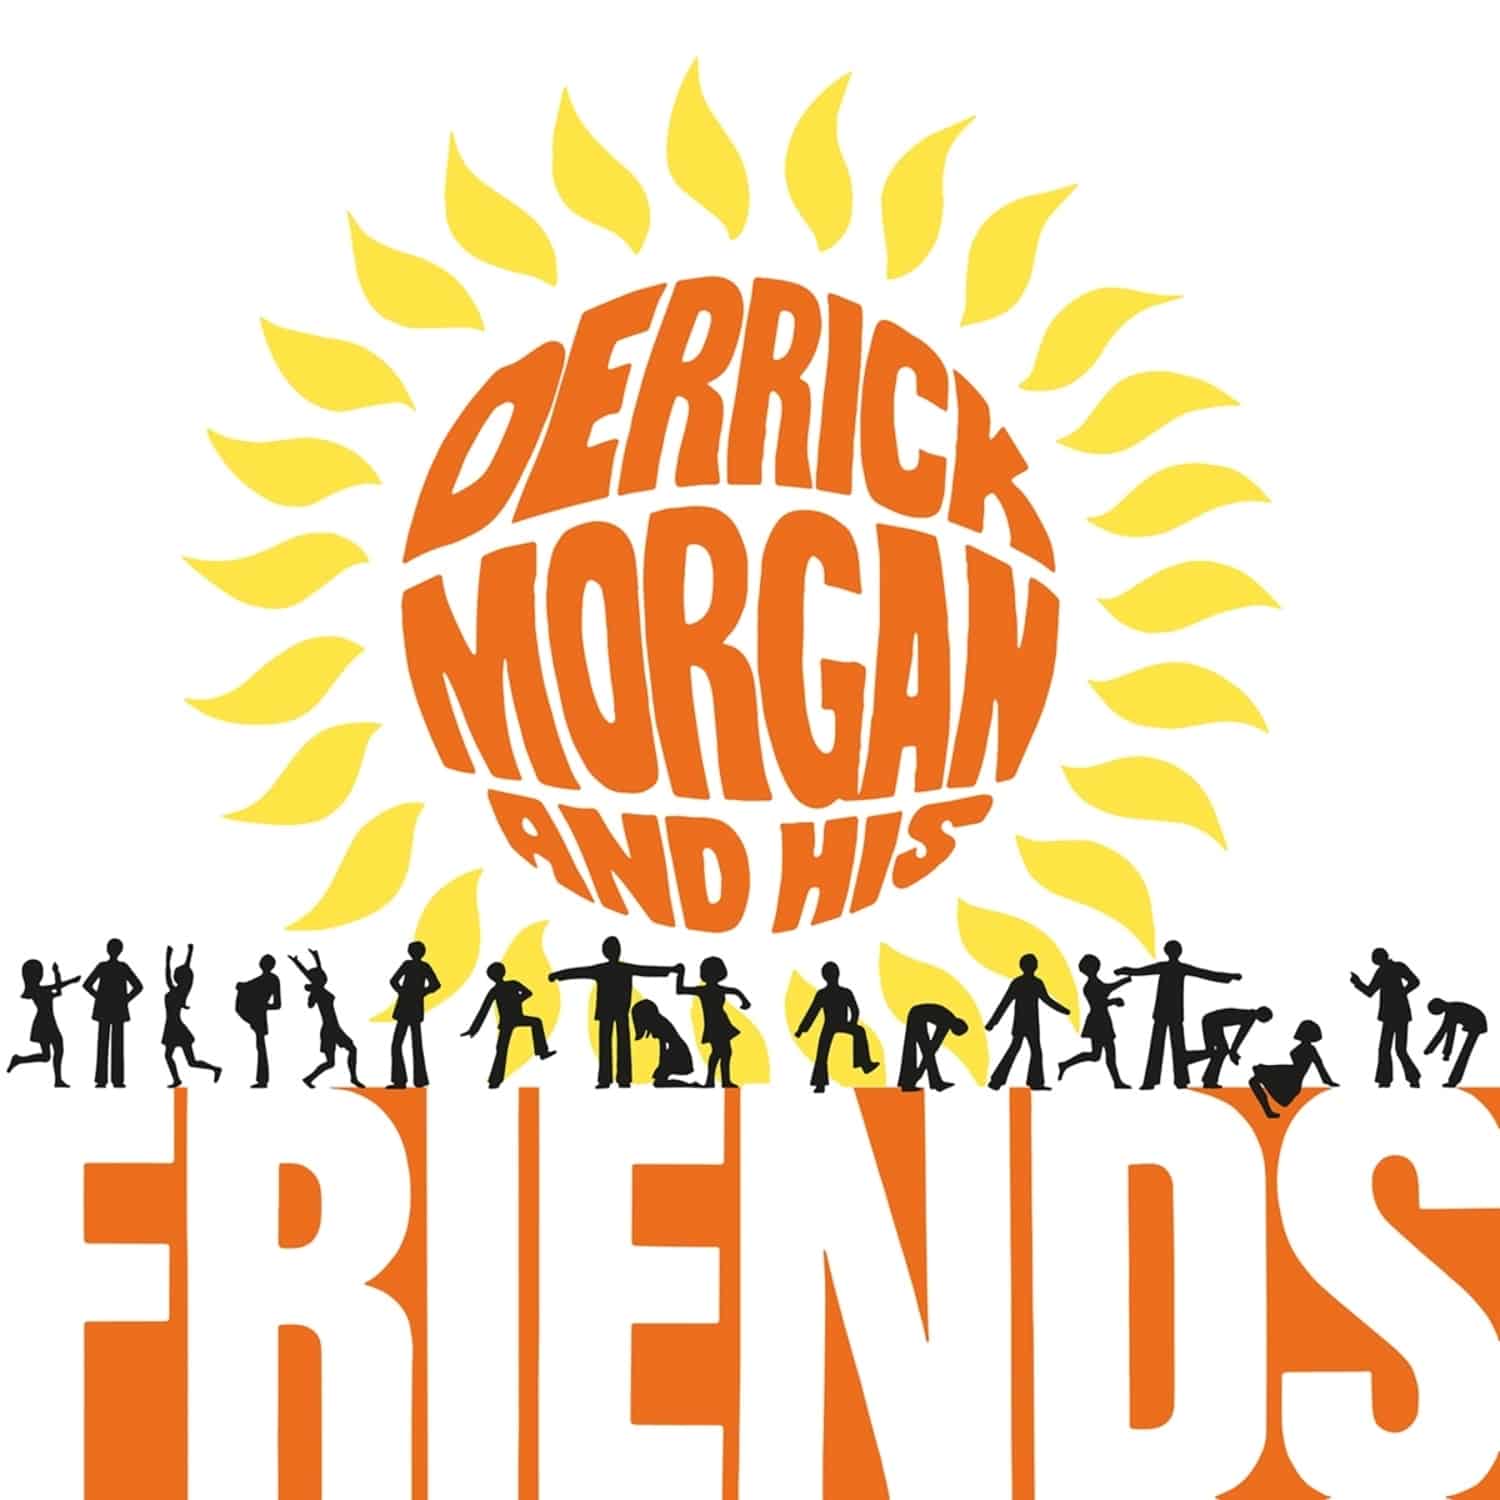  Derrick Morgan - DERRICK MORGAN AND HIS FRIENDS 